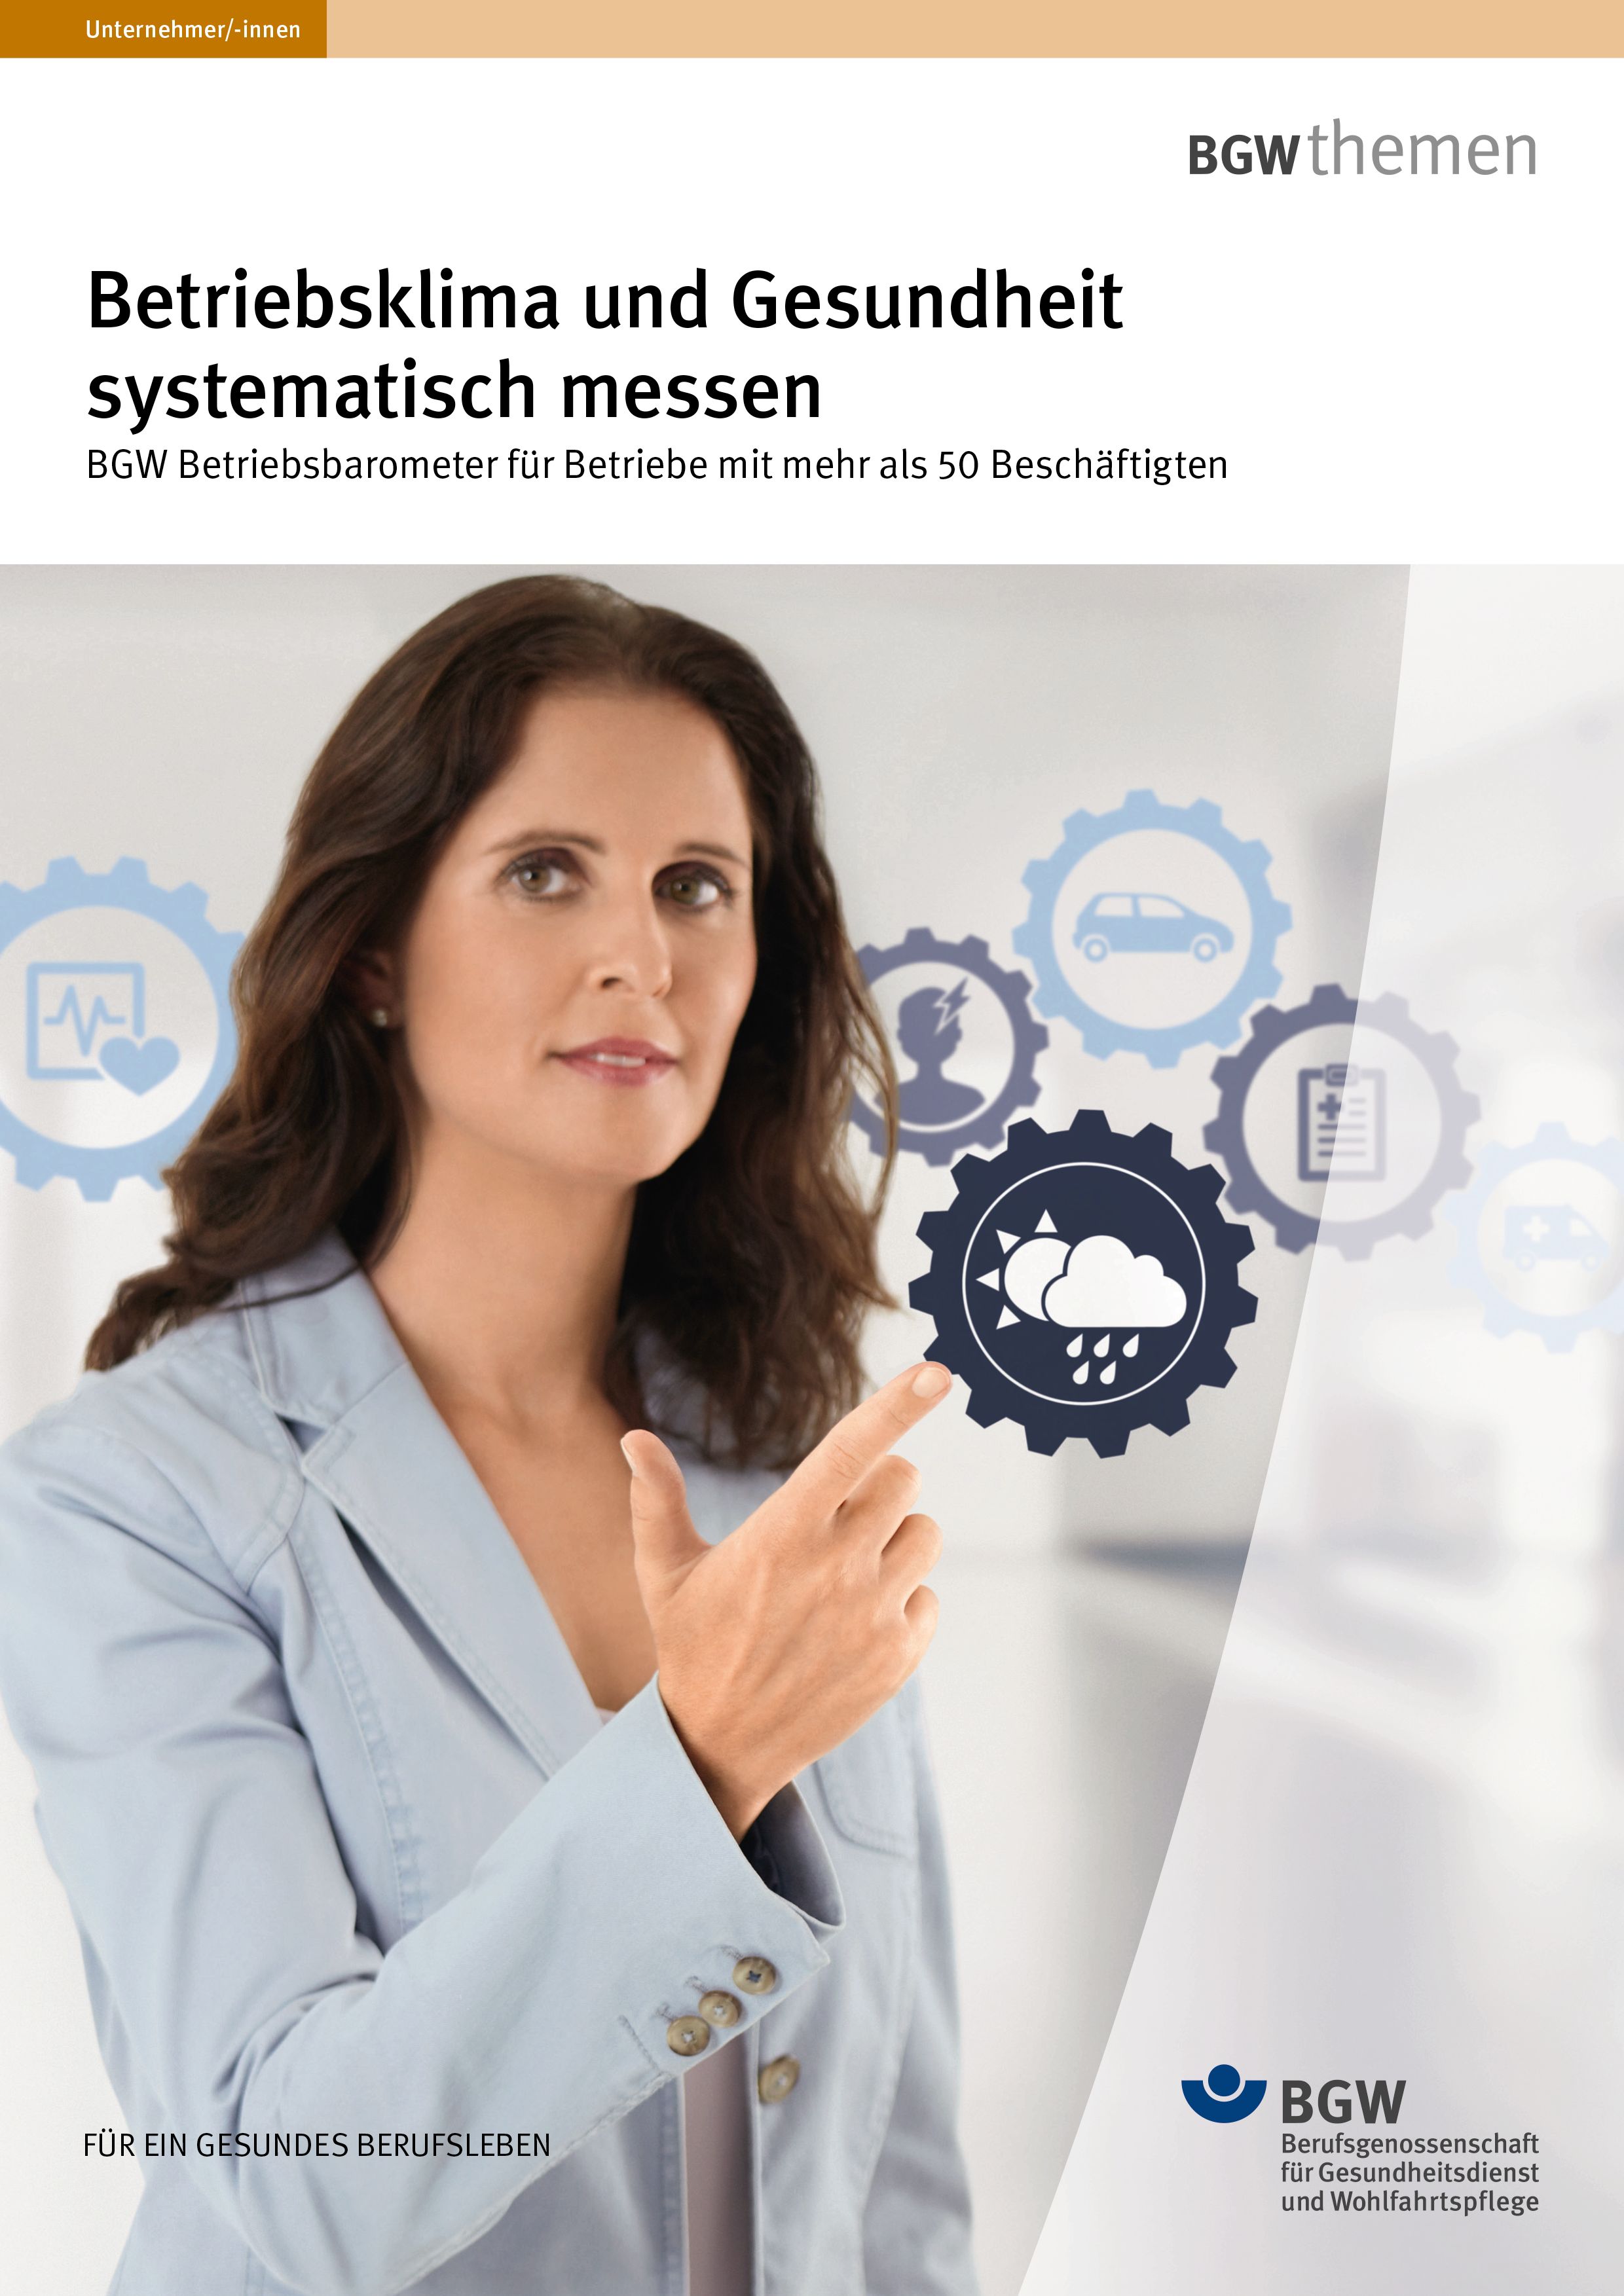 Titel: Betriebsklima und Gesundheit systematisch messen – Frau zeigt auf Piktogramme (Gesundheit, Wetter, Psyche, Verkehr, Erste Hilfe)